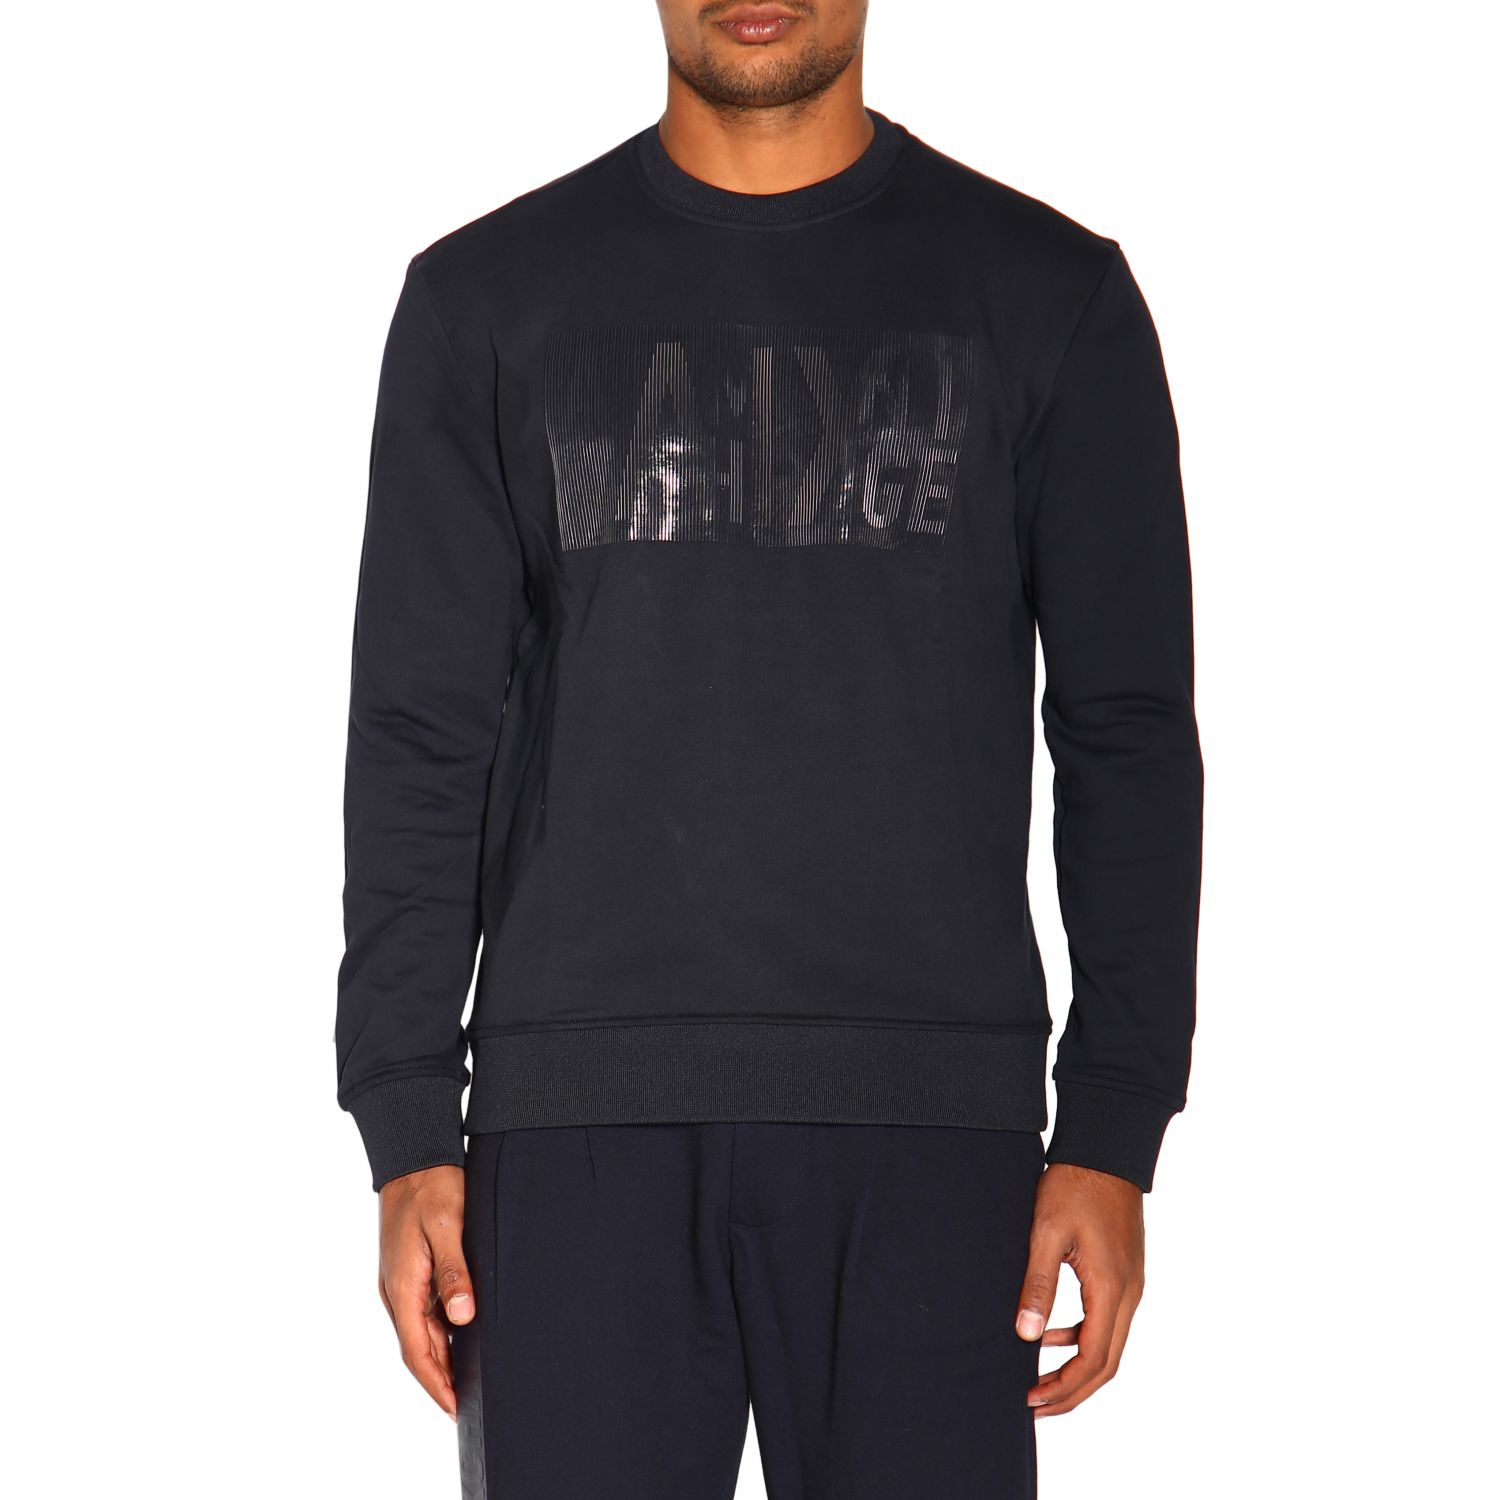 Armani Exchange Outlet: Sweater men - Navy | Sweatshirt Armani Exchange ...